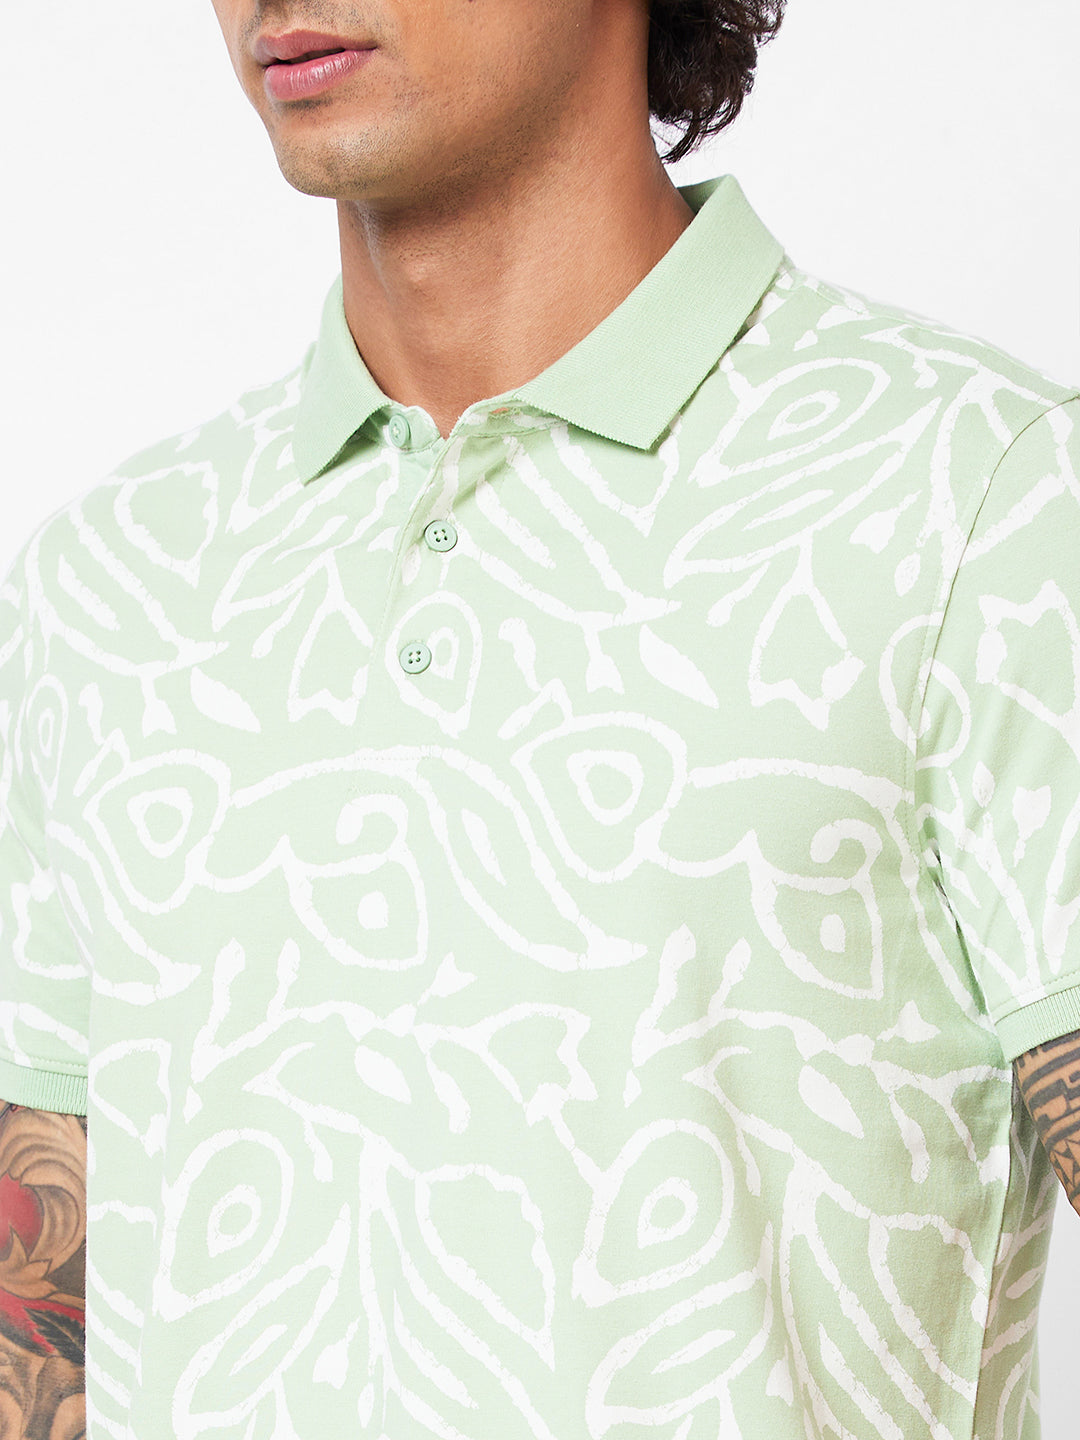 Spykar Polo Collar Half Sleeves Green T-Shirt For Men